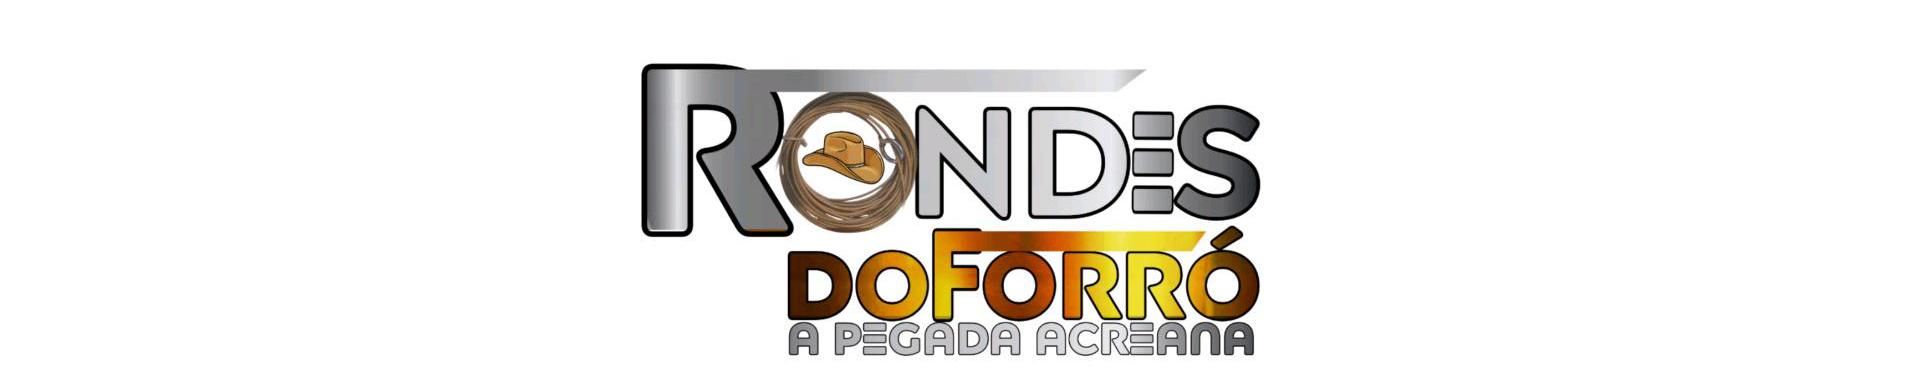 Imagem de capa de RONDES DO FORRÓ A PEGADA ACREANA